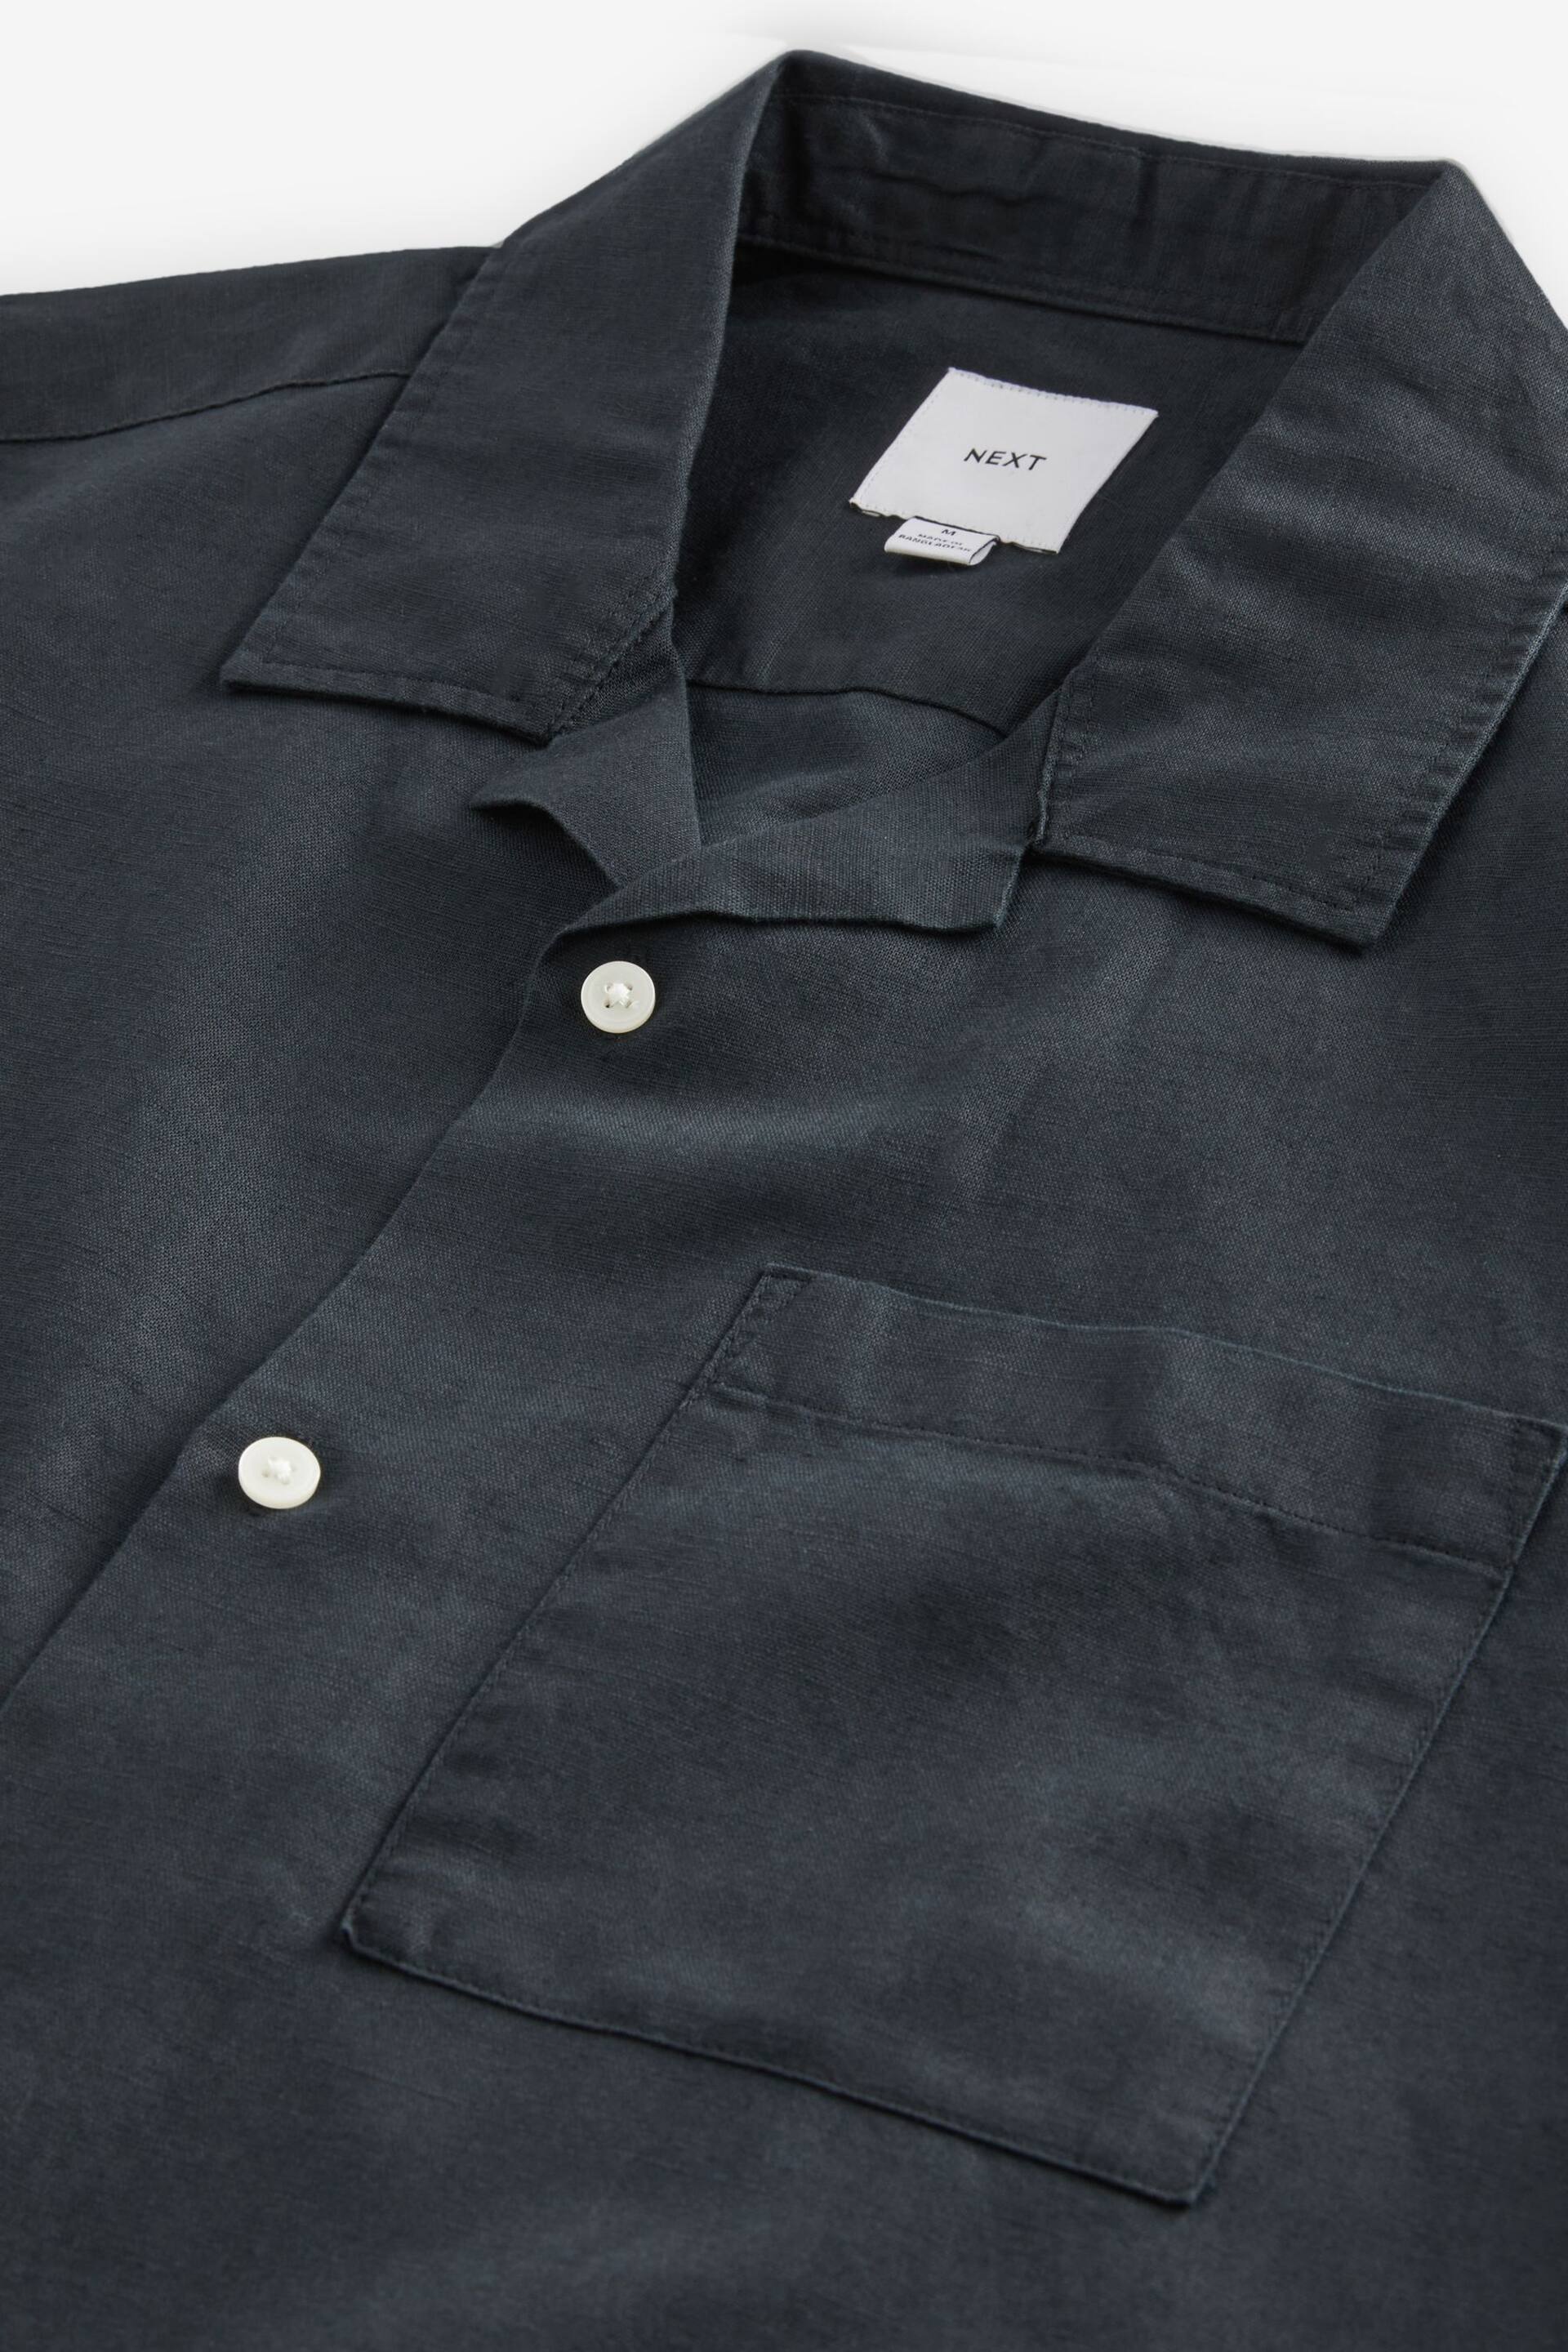 Black Cuban Collar Linen Blend Short Sleeve Shirt - Image 5 of 6